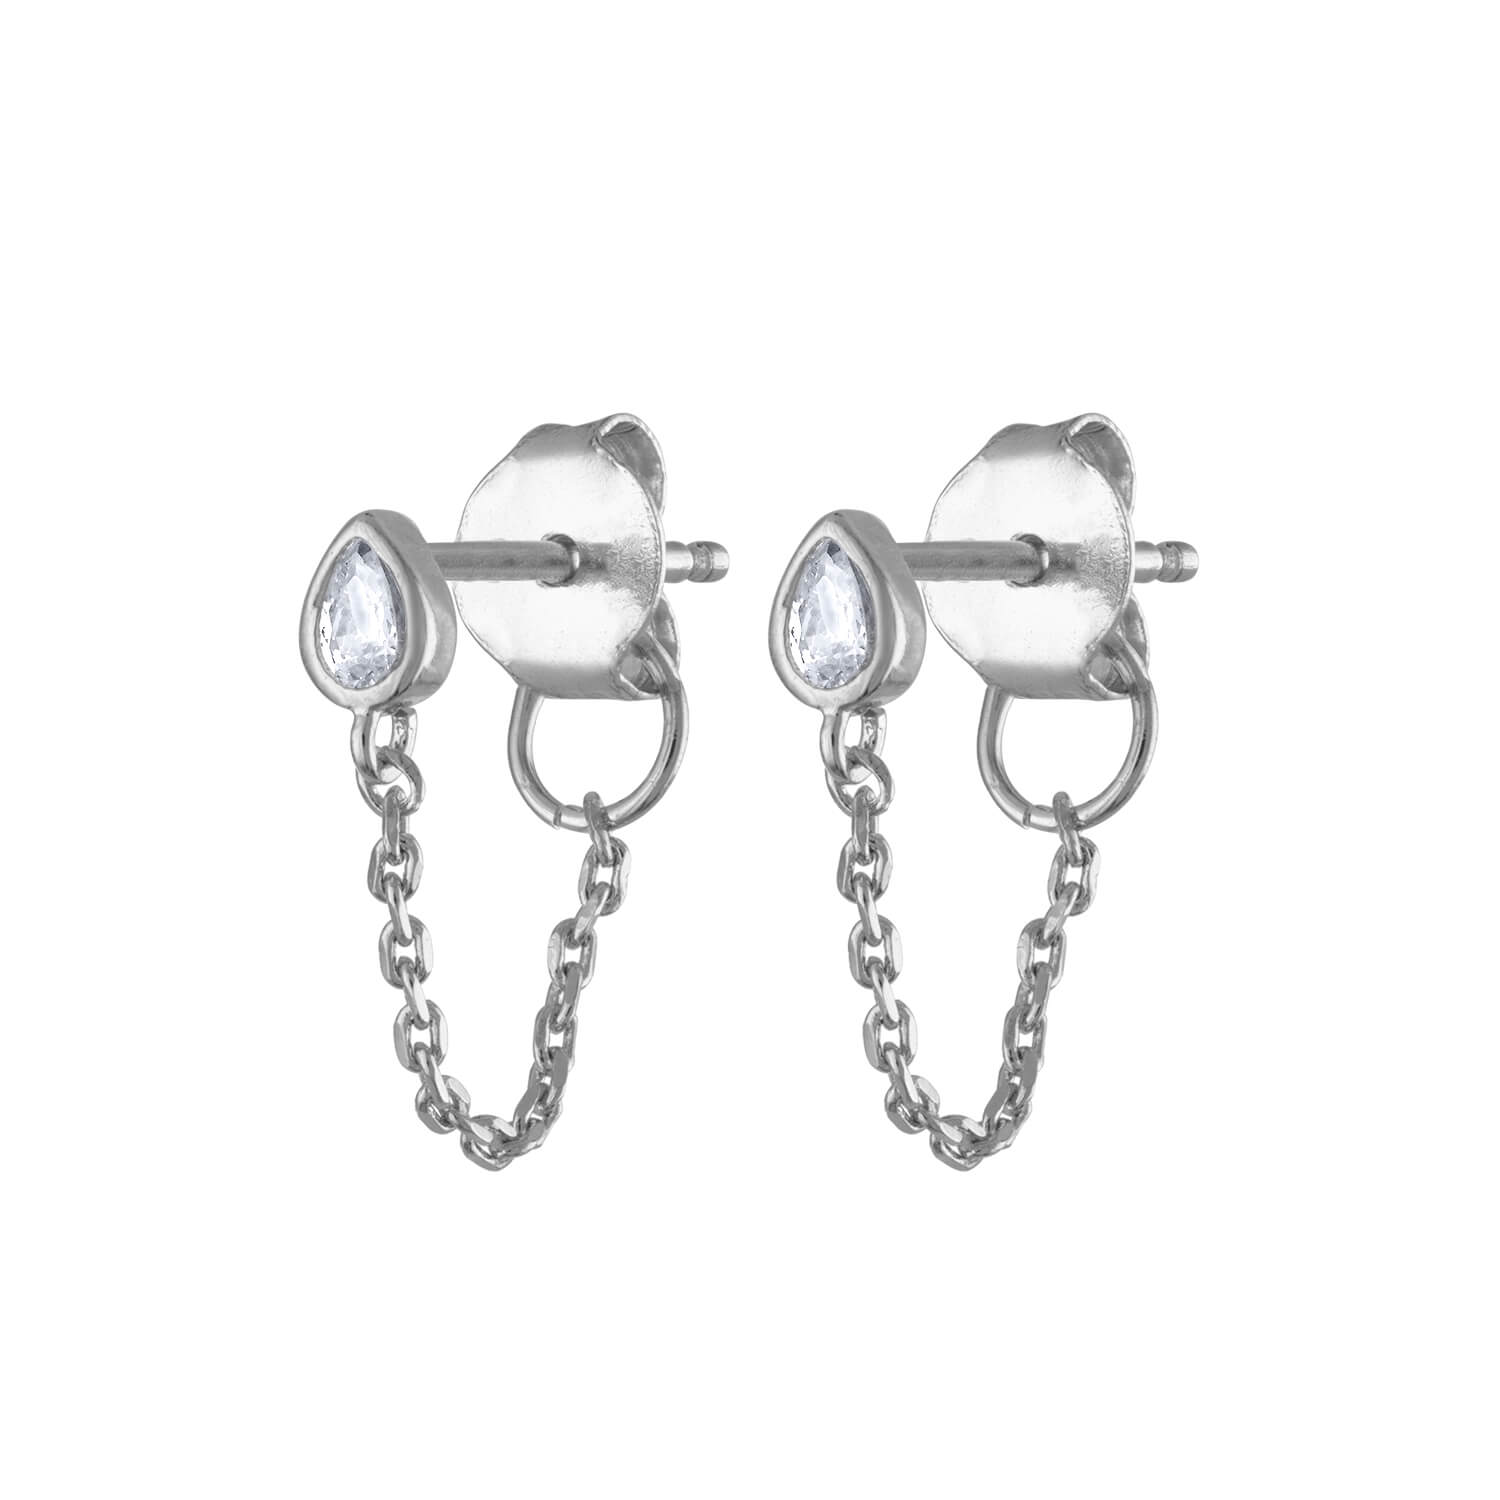 Colette Earrings in Sterling Silver